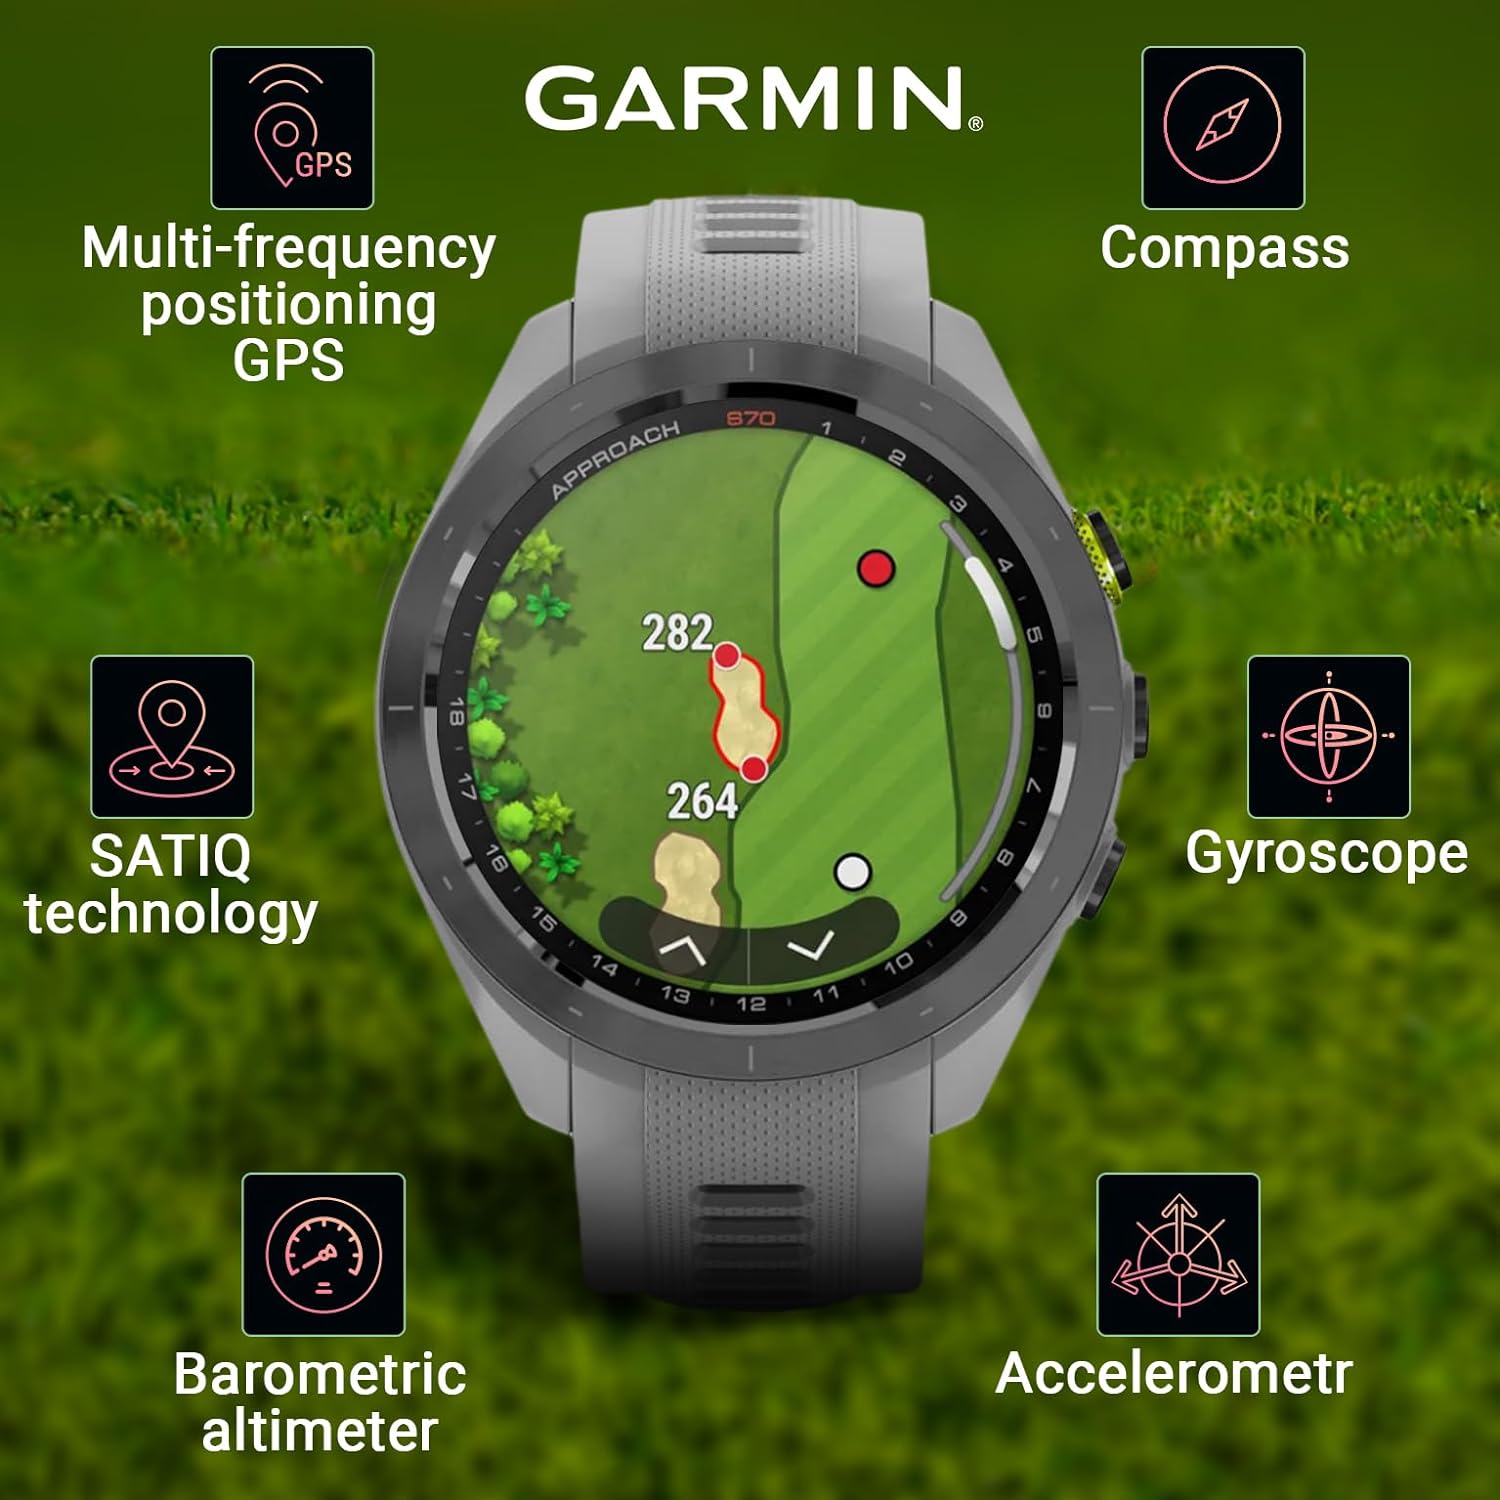 Đồng hồ thông minh Garmin Approach S70 (42mm/47mm) - Hàng chính hãng